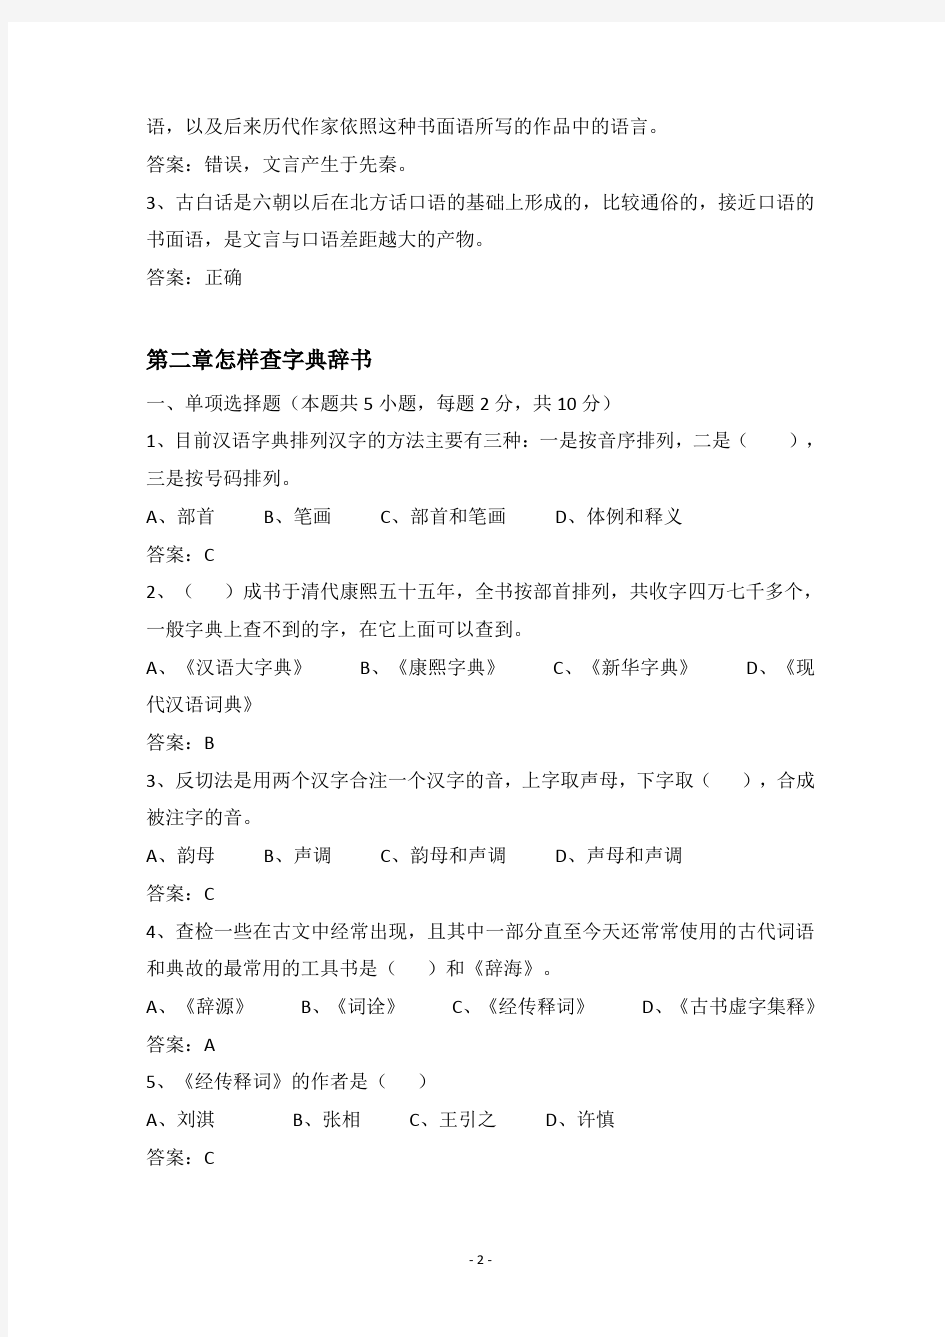 《古代汉语》网上考试题库